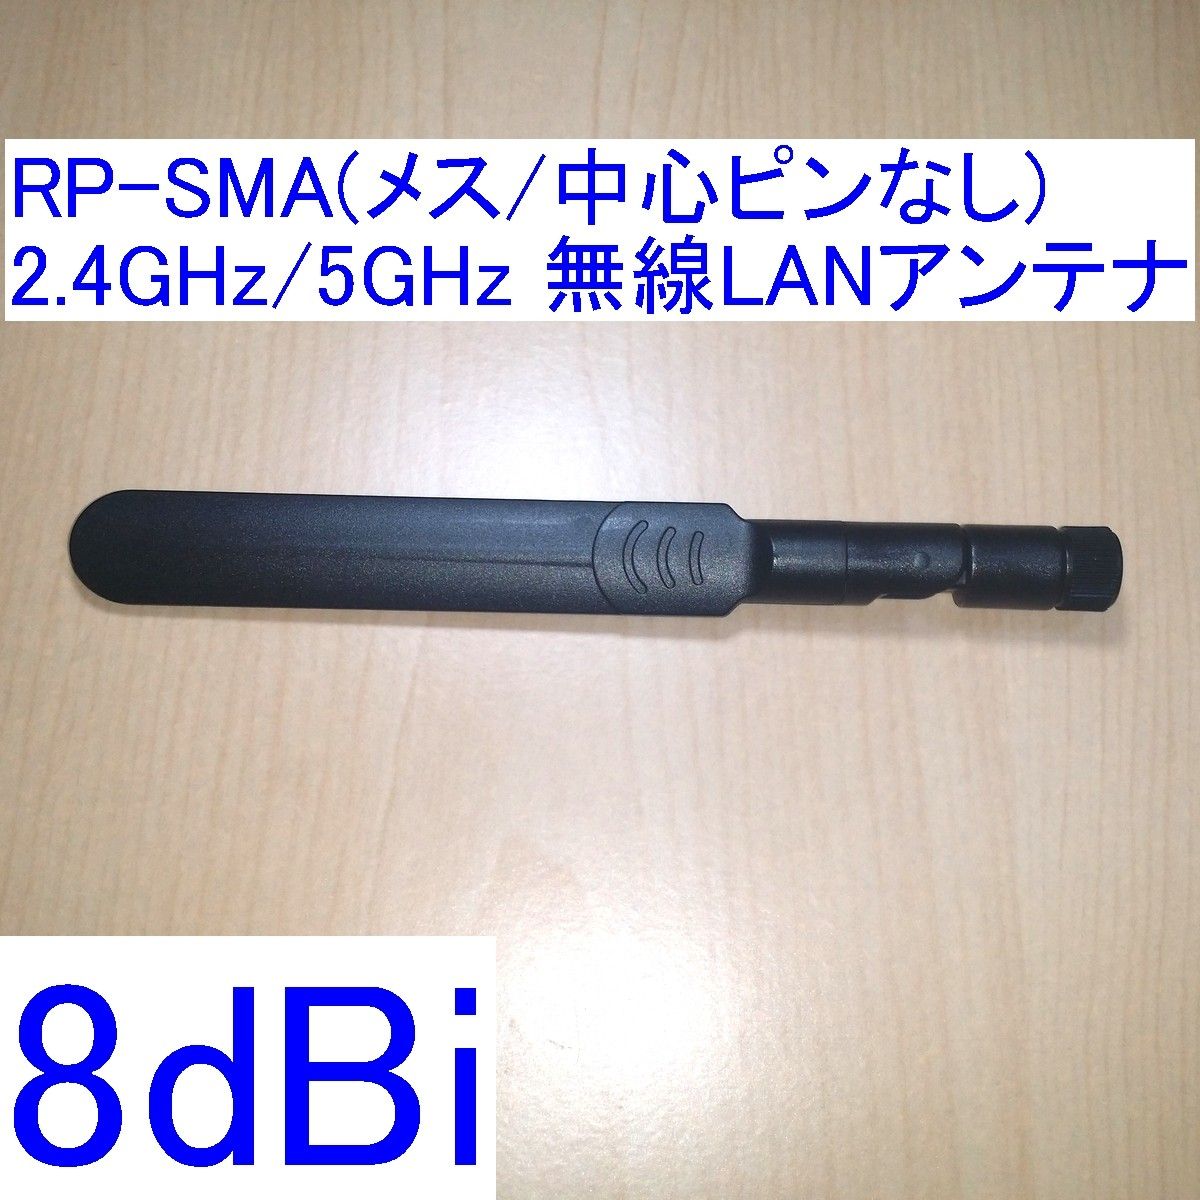 8dBi 2.4GHz/5GHz対応 R-SMA/RP-SMA(メス/中心ピン無し) 無線LANアンテナ 新品